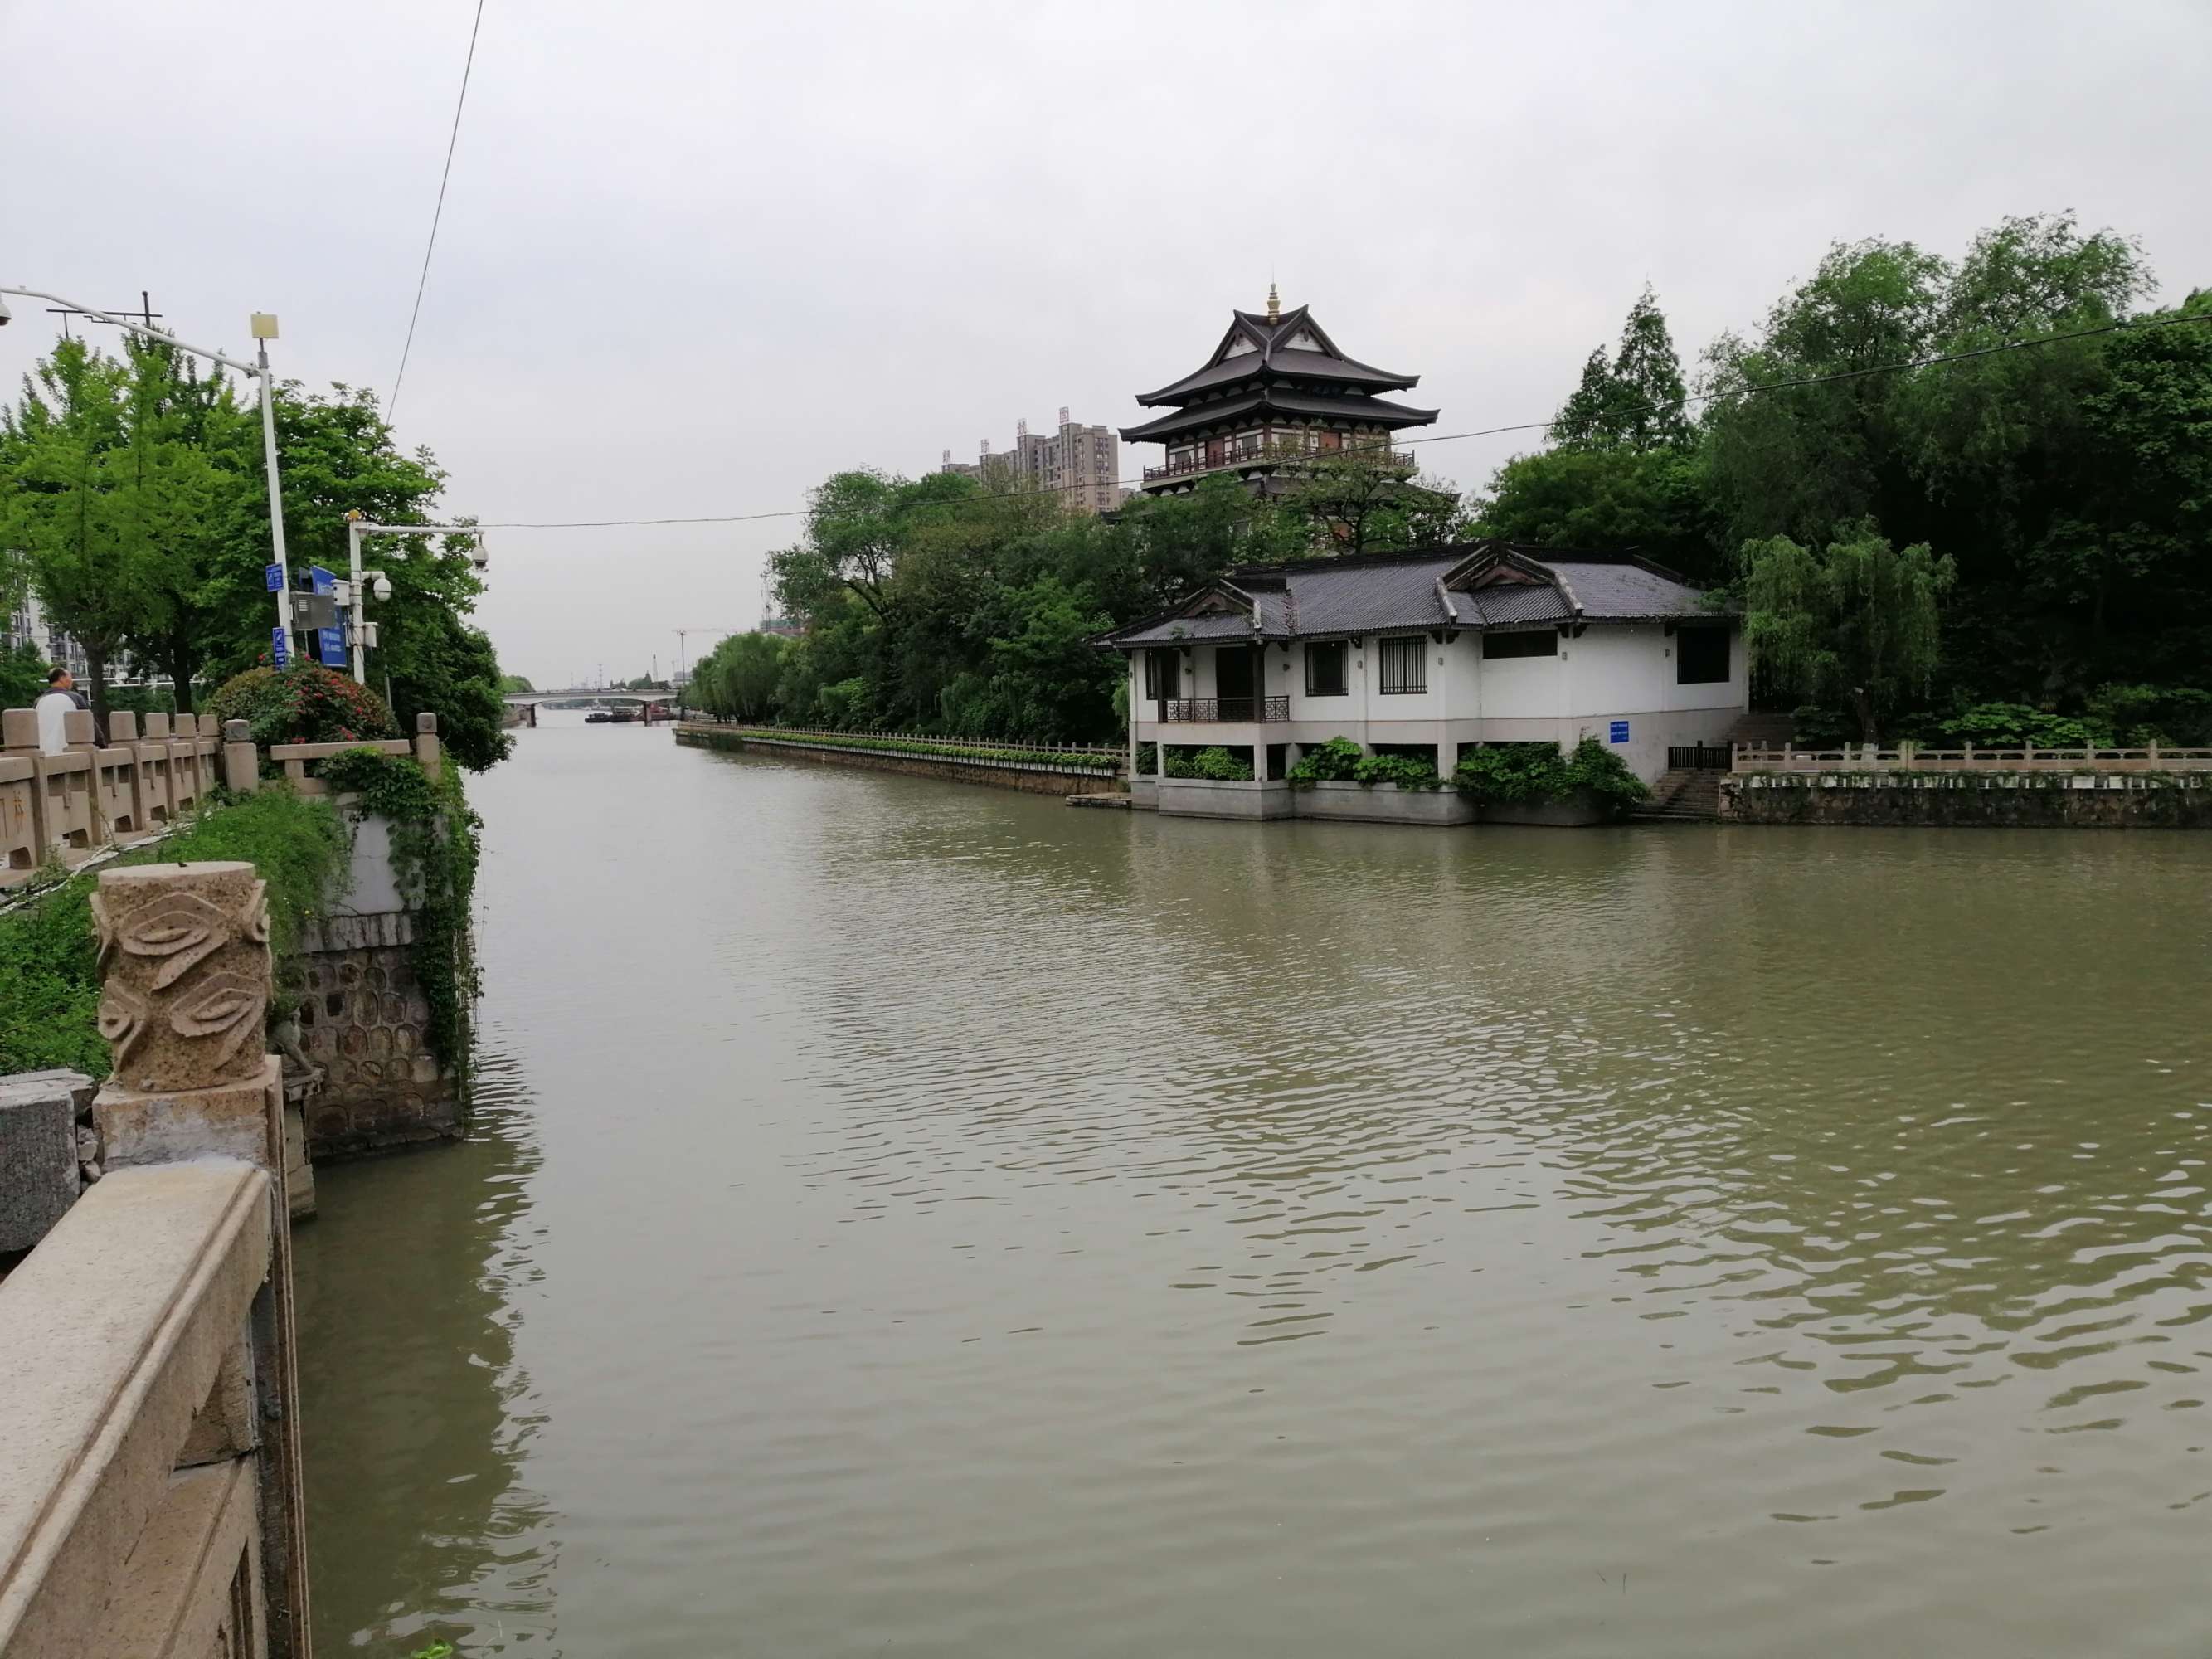 世界运河名城_扬州 世界运河名城_扬州世界运河名城博览会